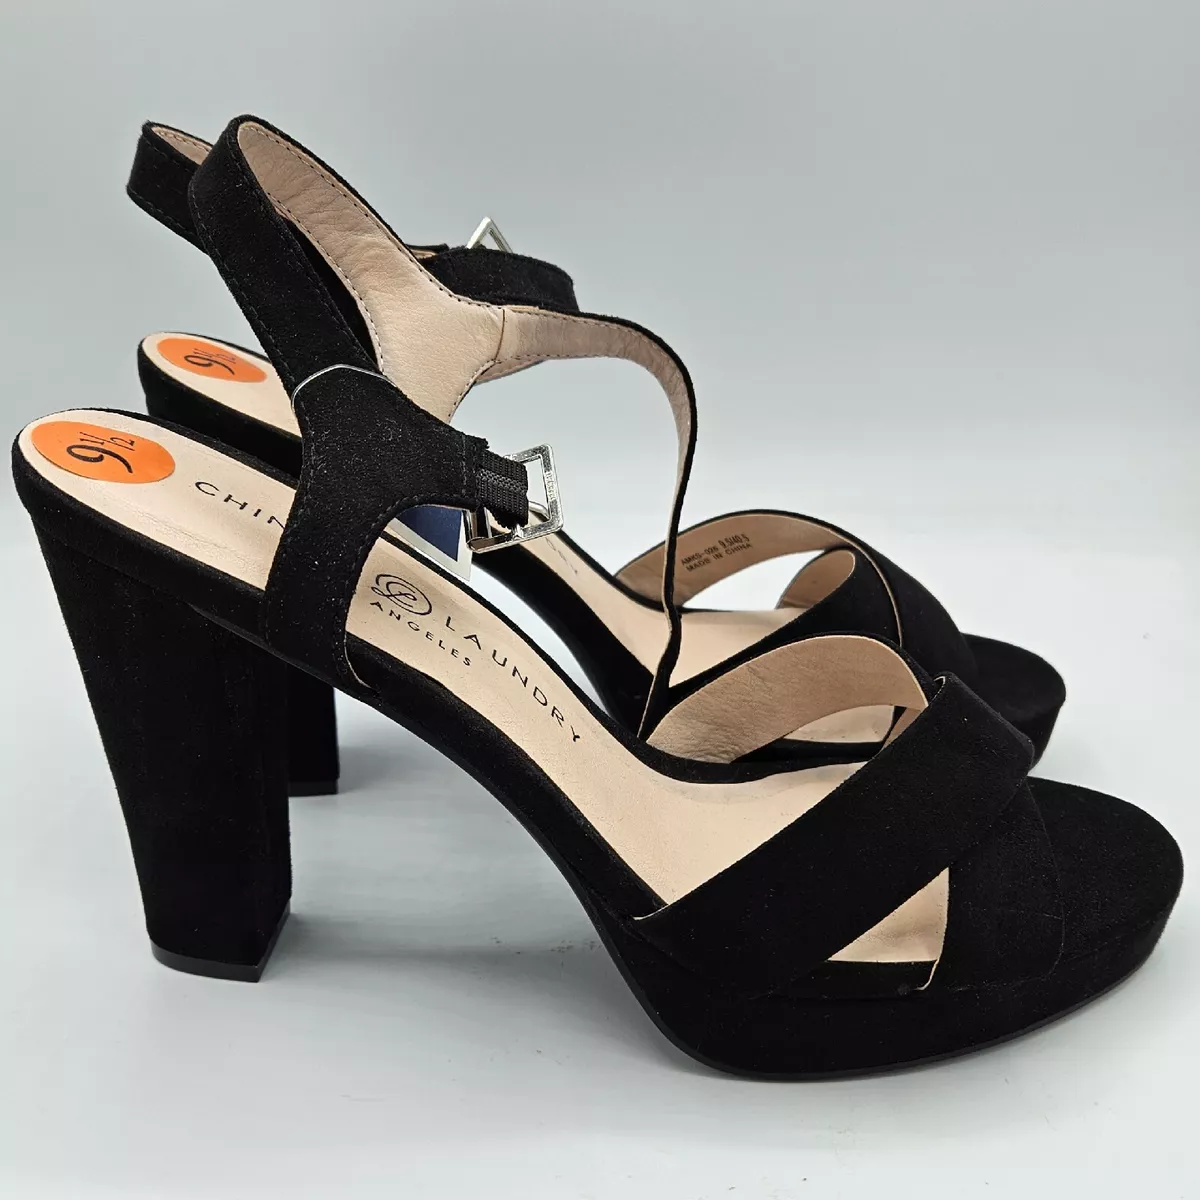 Shop Women's New Look Peep Toe Heels up to 80% Off | DealDoodle